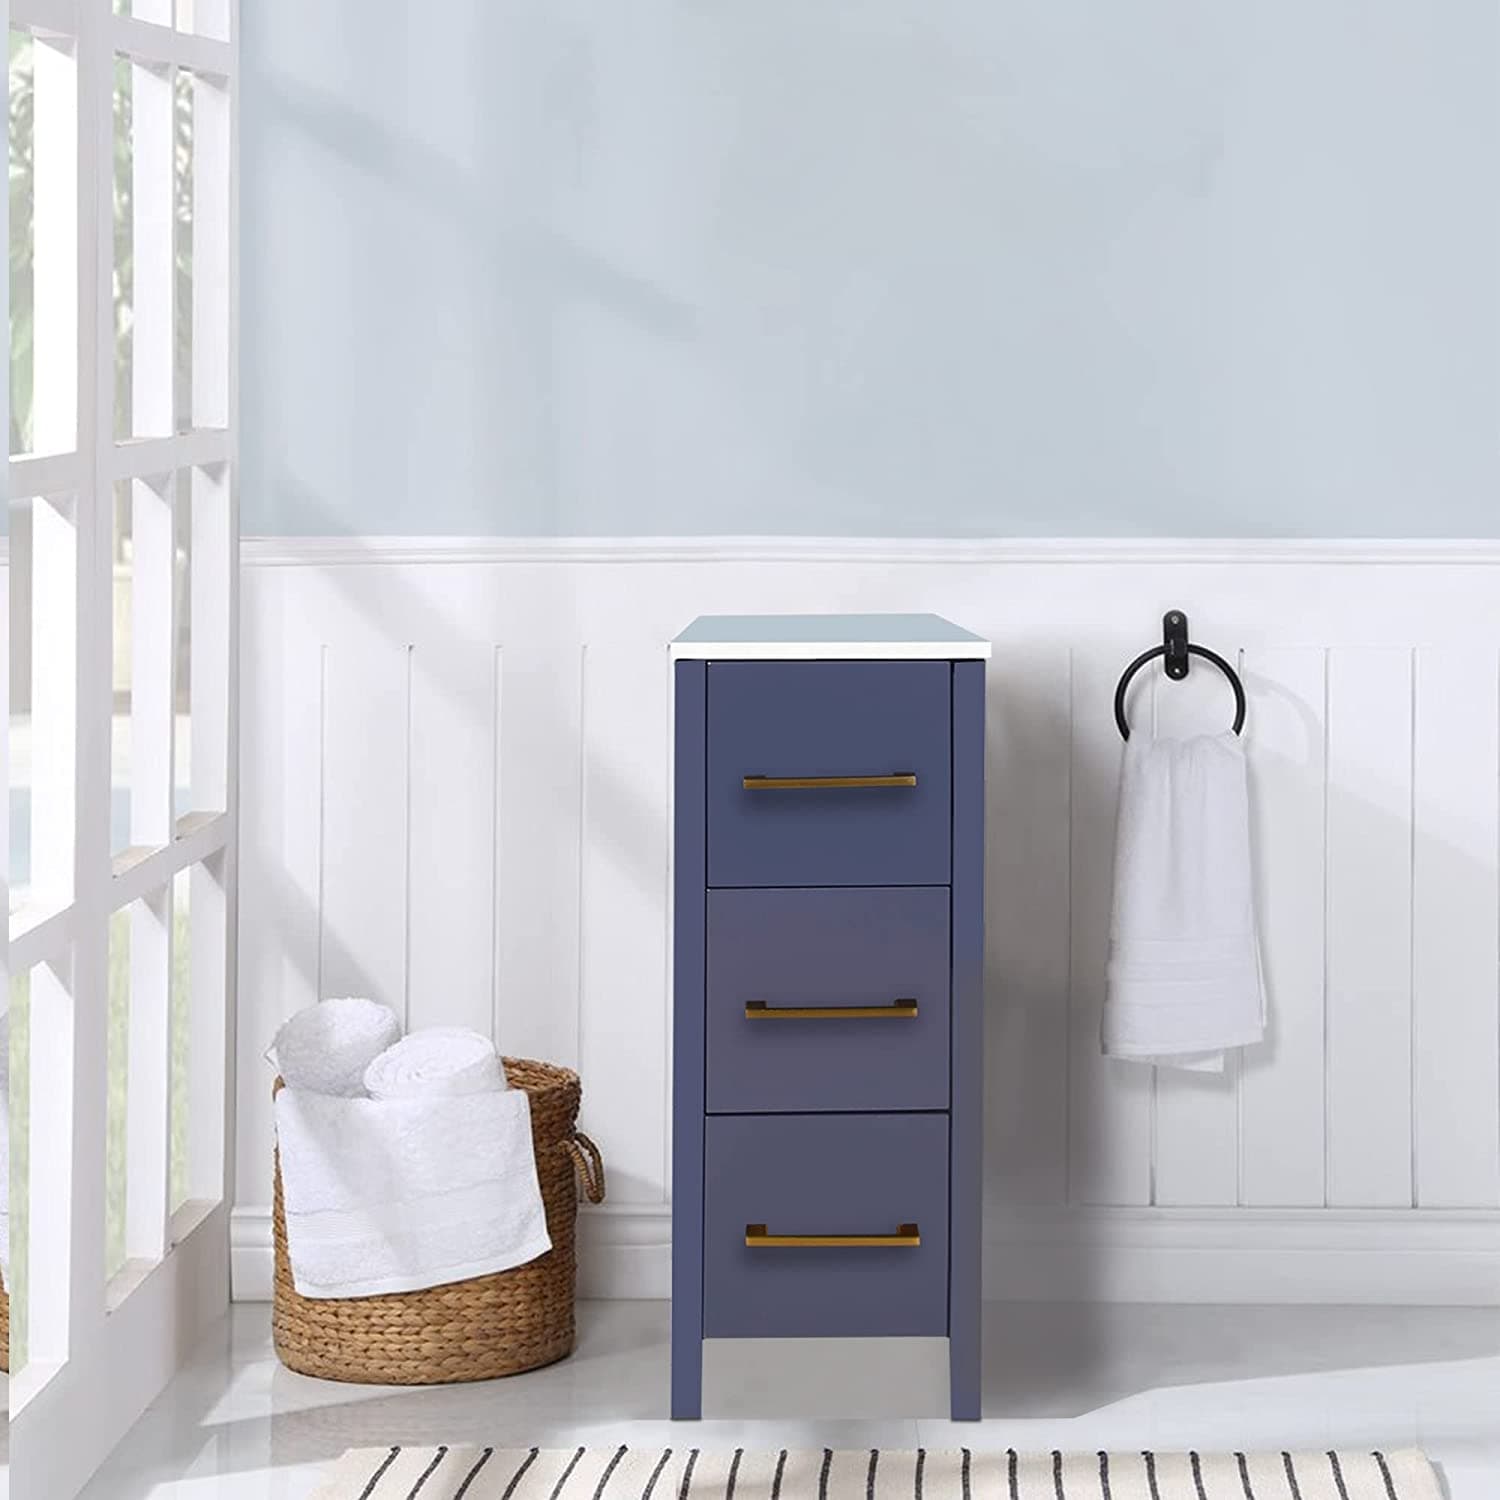 2 Tier Bathroom Countertop Organizer Vanity Bedroom Storage Tray for Bedroom